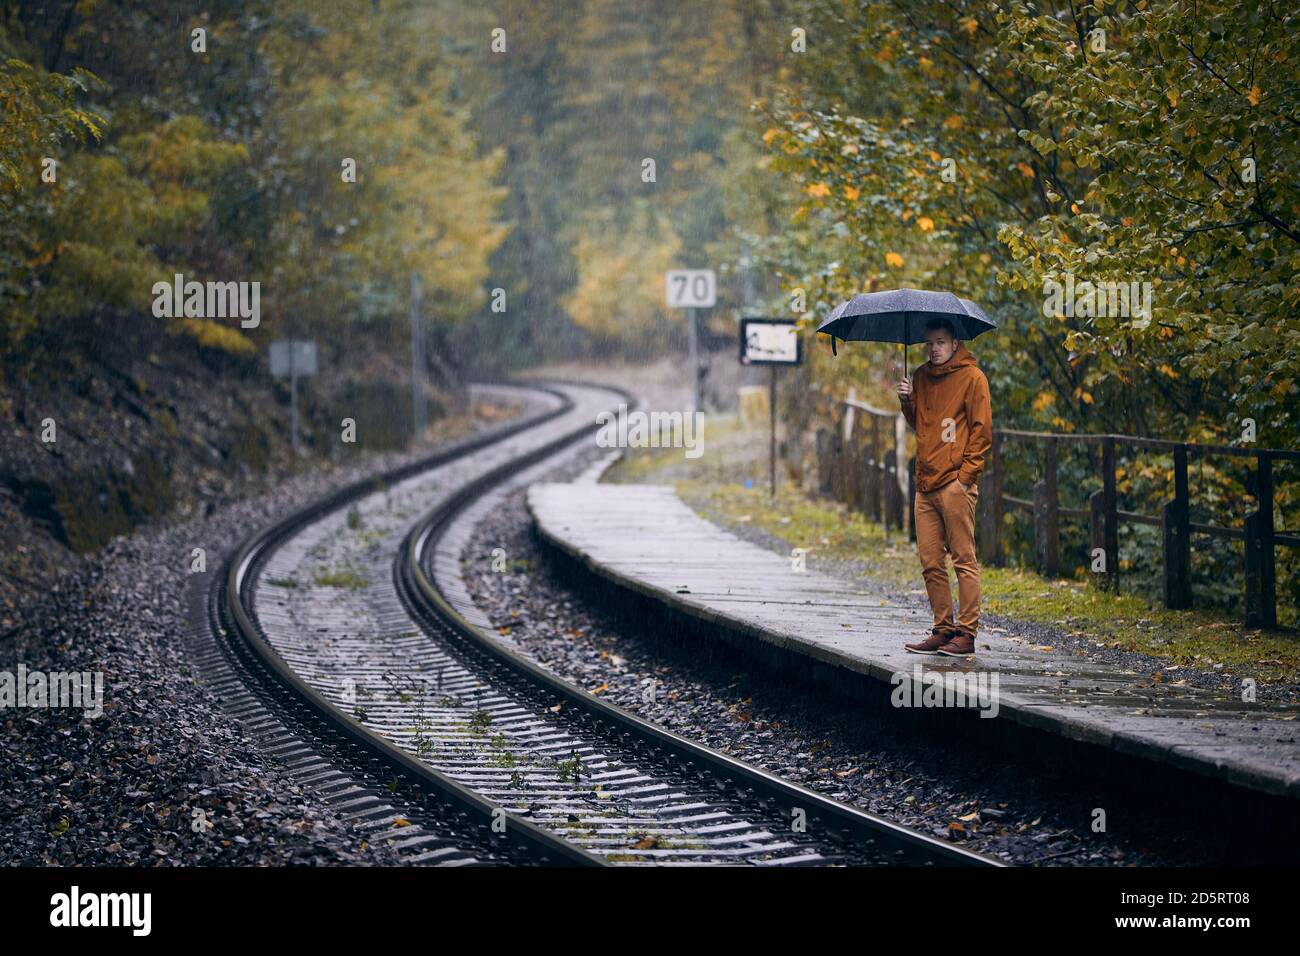 Nachdenklicher junger Mann mit Regenschirm, der während des Regens am Bahnhof wartet. Themen Wetter, Herbst und Einsamkeit. Stockfoto